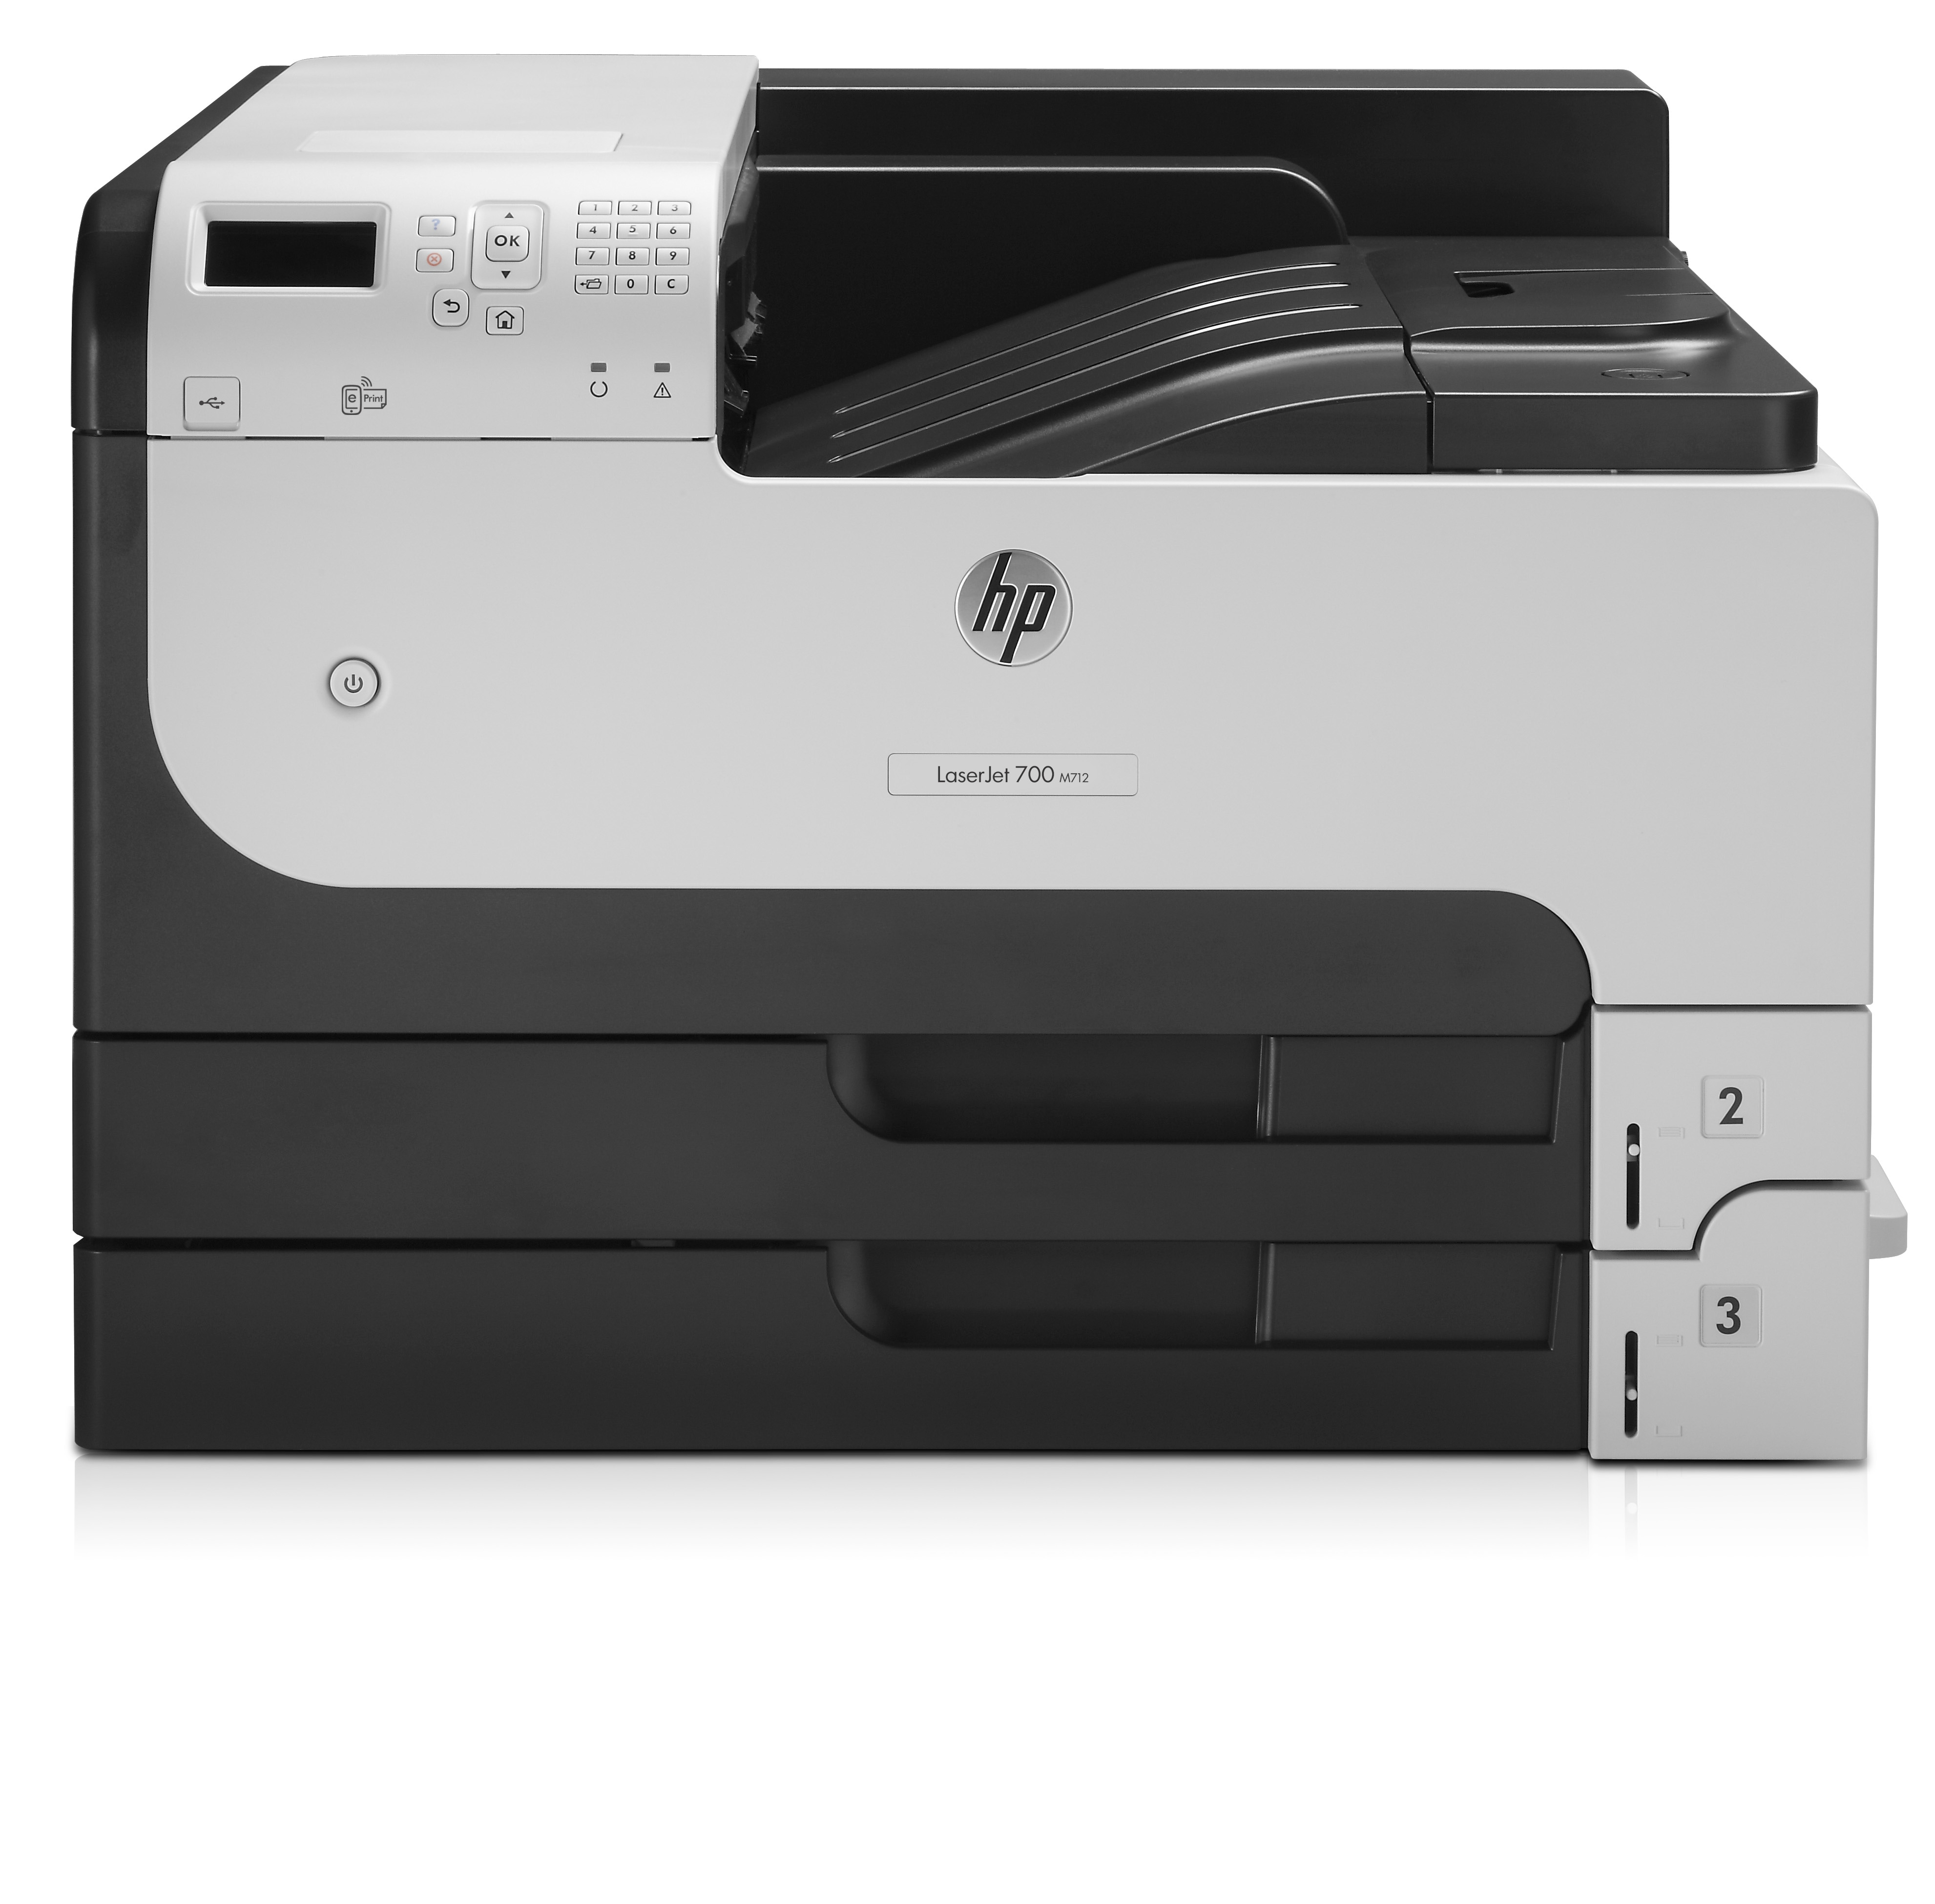 Stampante laser HP LaserJet Enterprise 700 M712dn, Bianco e nero, per Aziendale, Stampa, Porta USB frontale, Stampa fronte/retro [CF236A]